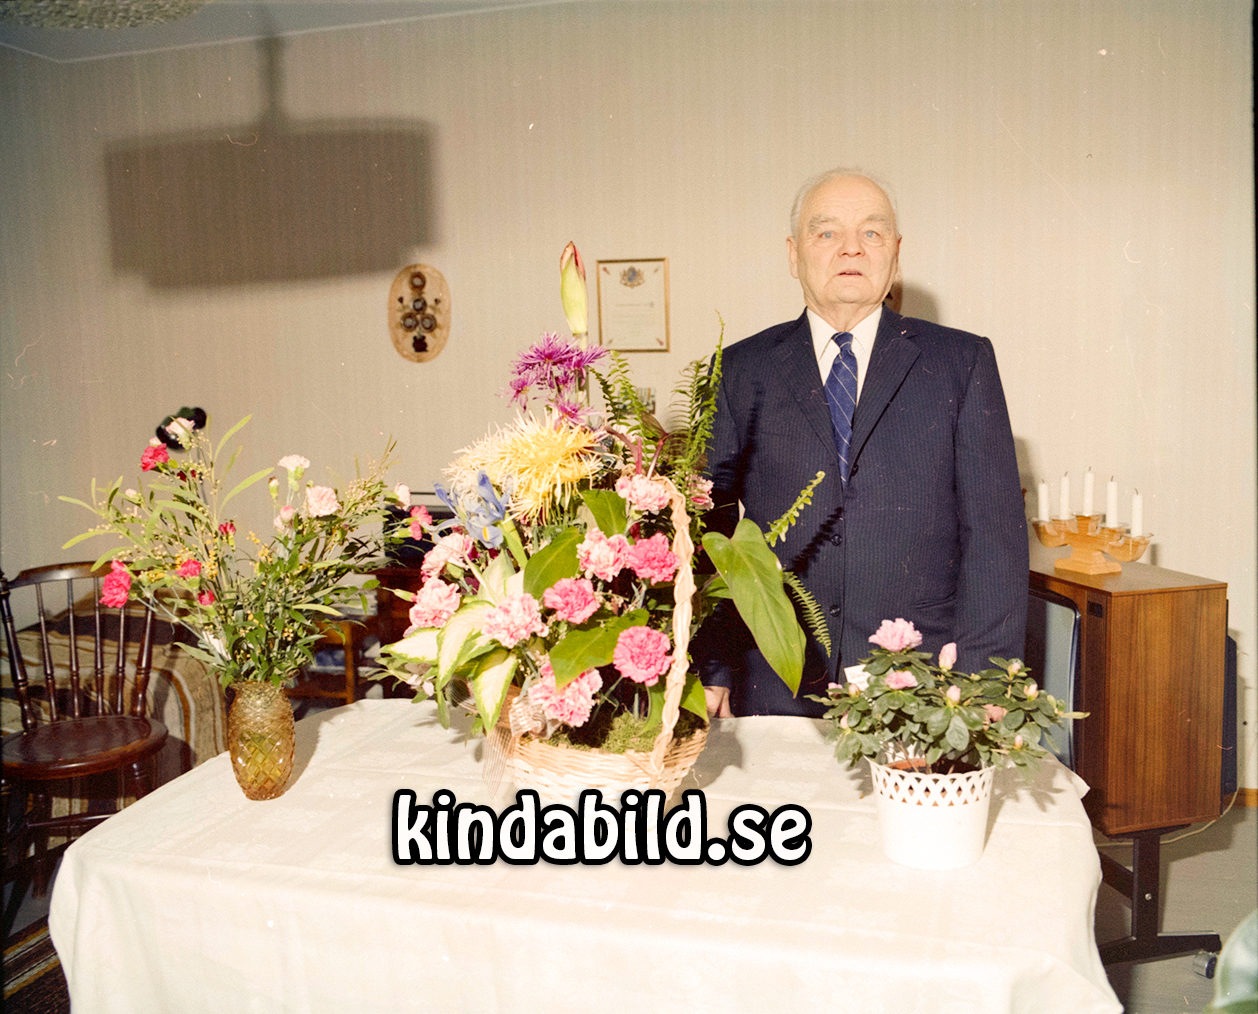 Harald Karlsson Bergdalagatan 21 B Kisa
raja
Man som firar sin högtidsdag 
Nyckelord: Karlsson Kisa